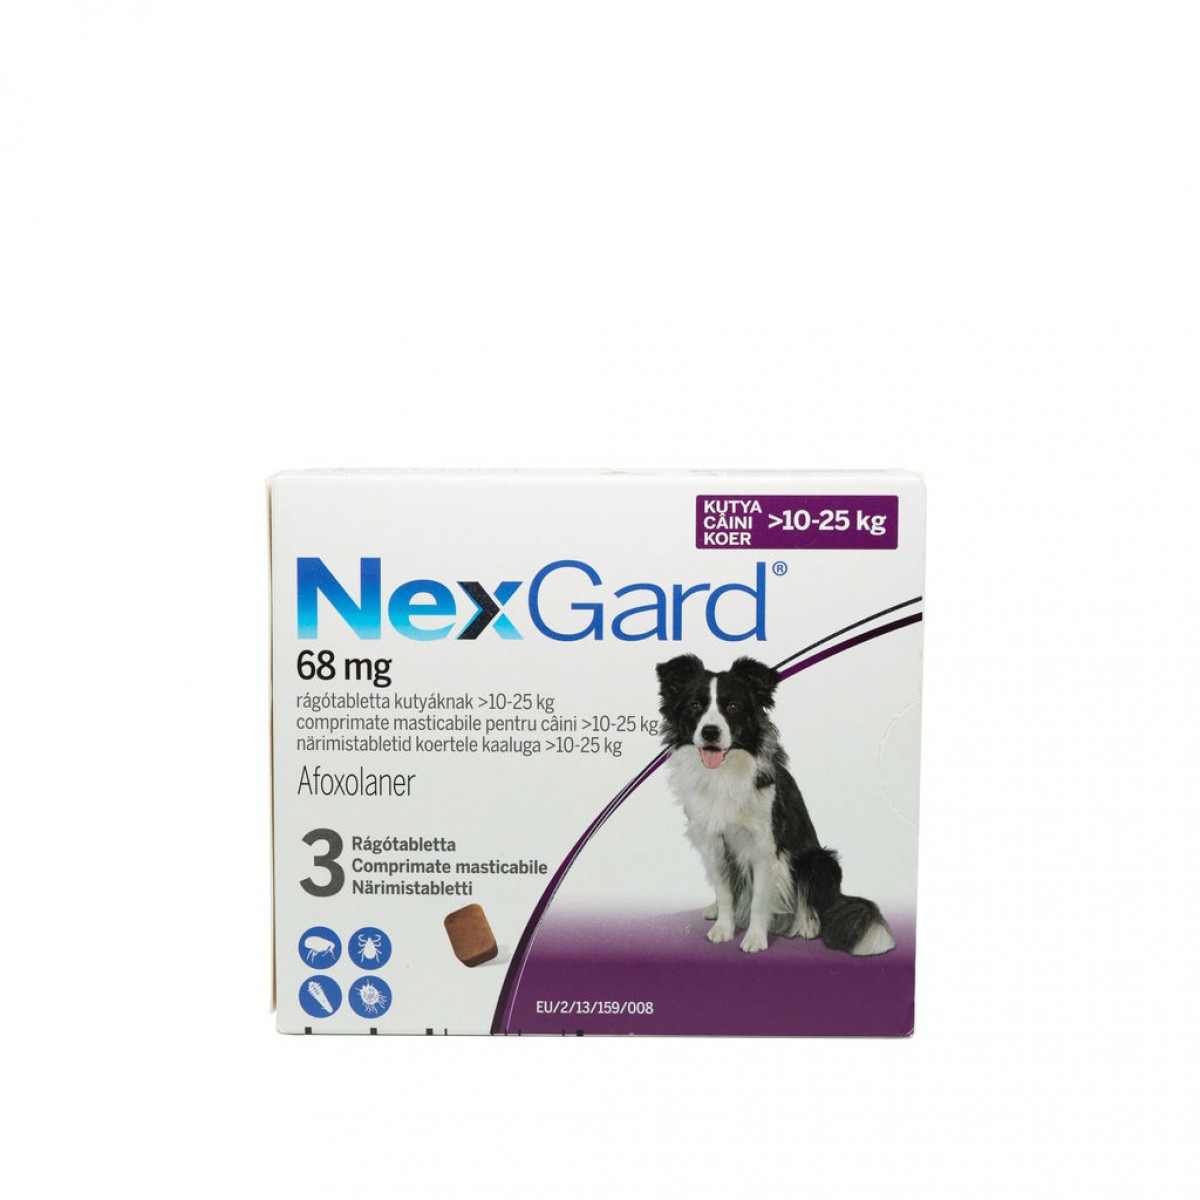 Nexgard L pentru câini de 10 - 25kg, 3 comprimate masticabile, Antiparazitare externe, Antiparazitare, Câini 